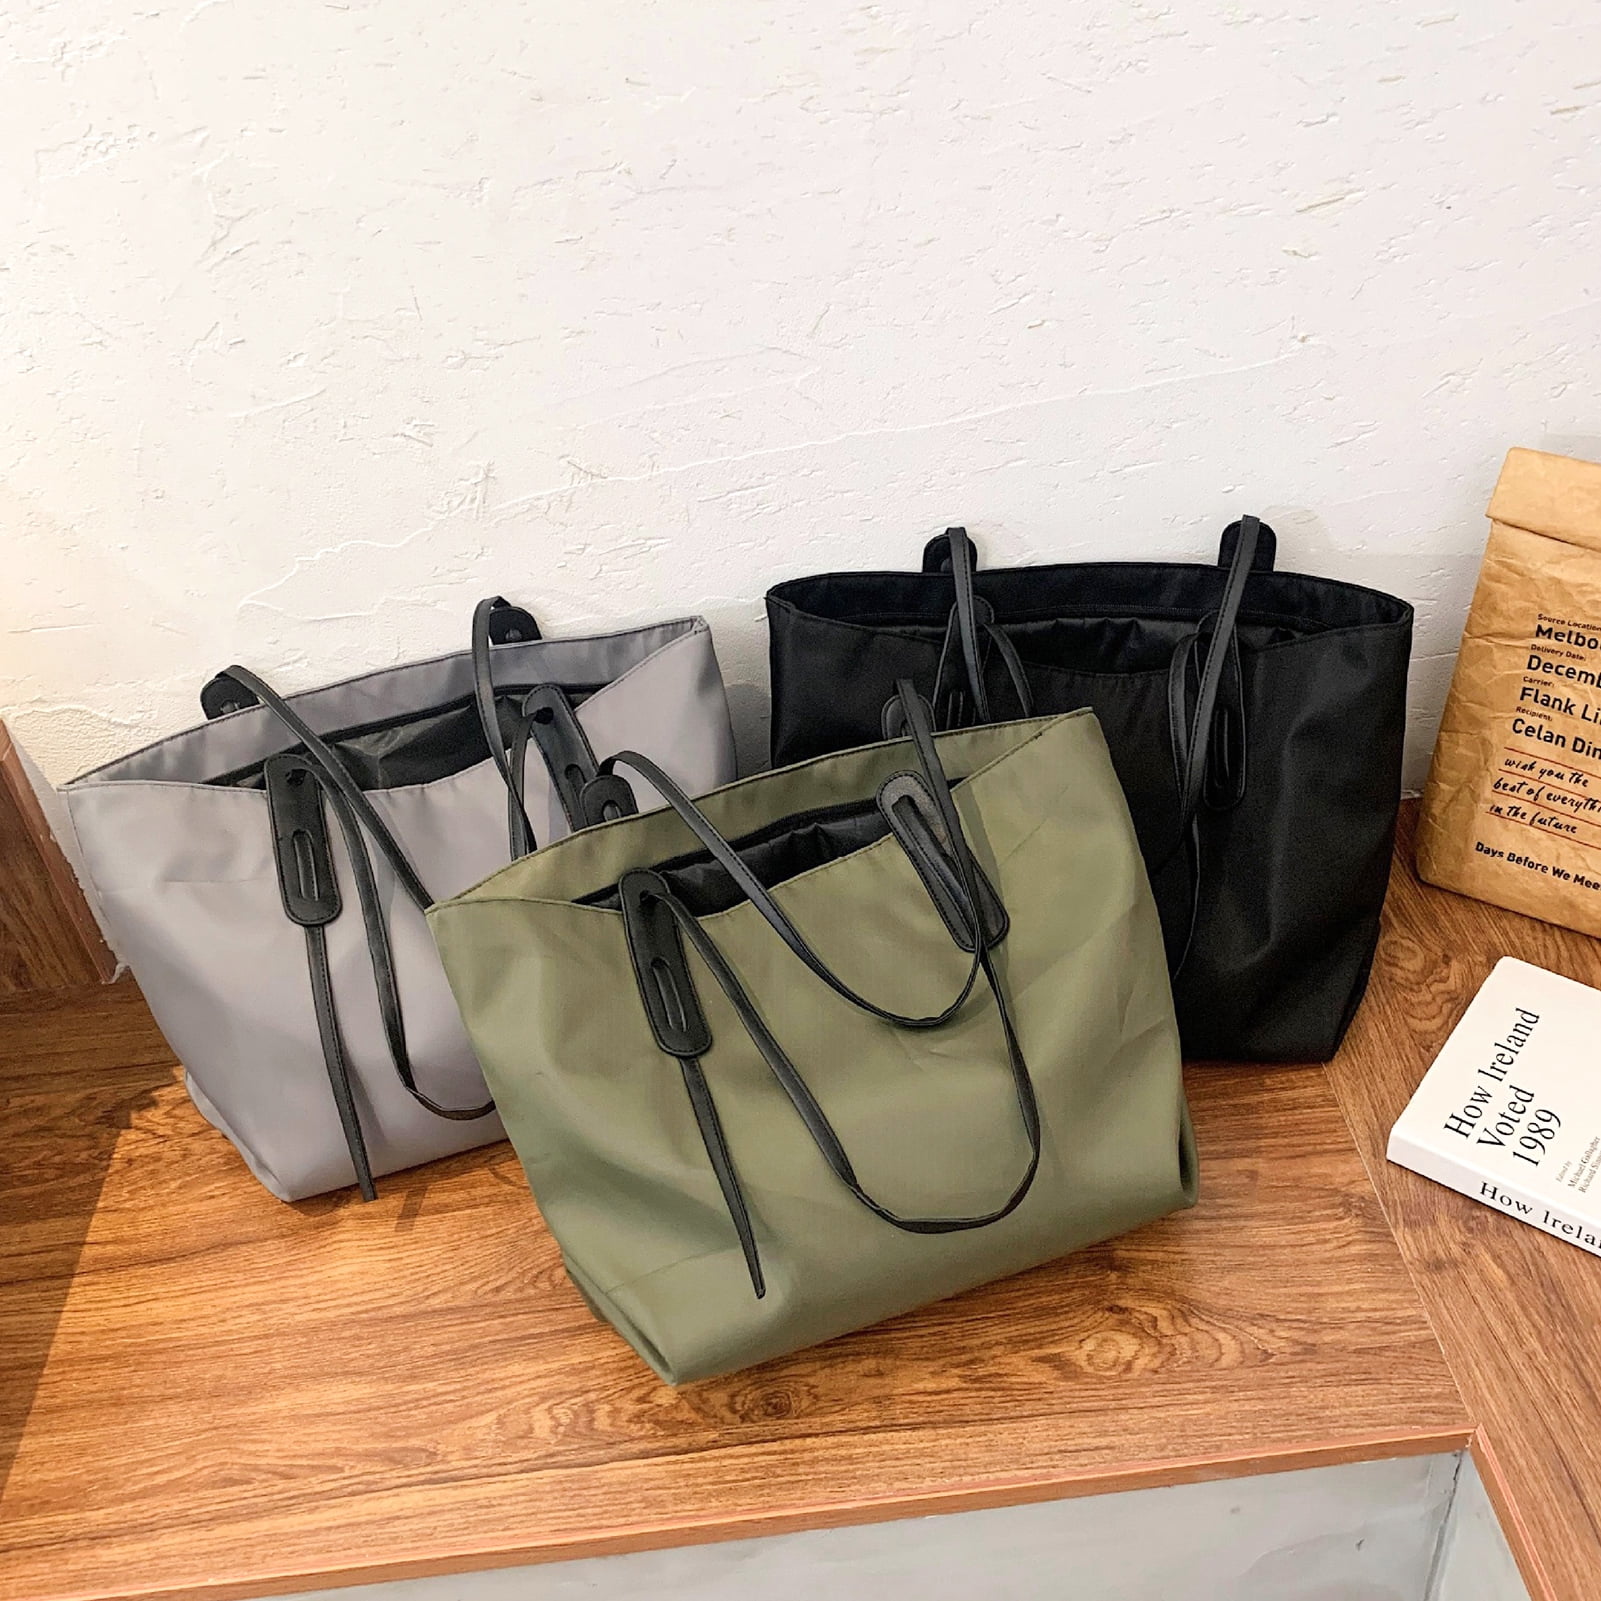 women's leather canvas garden party tote bag Crossbody shoulder bag handbag  (Black,M): Handbags